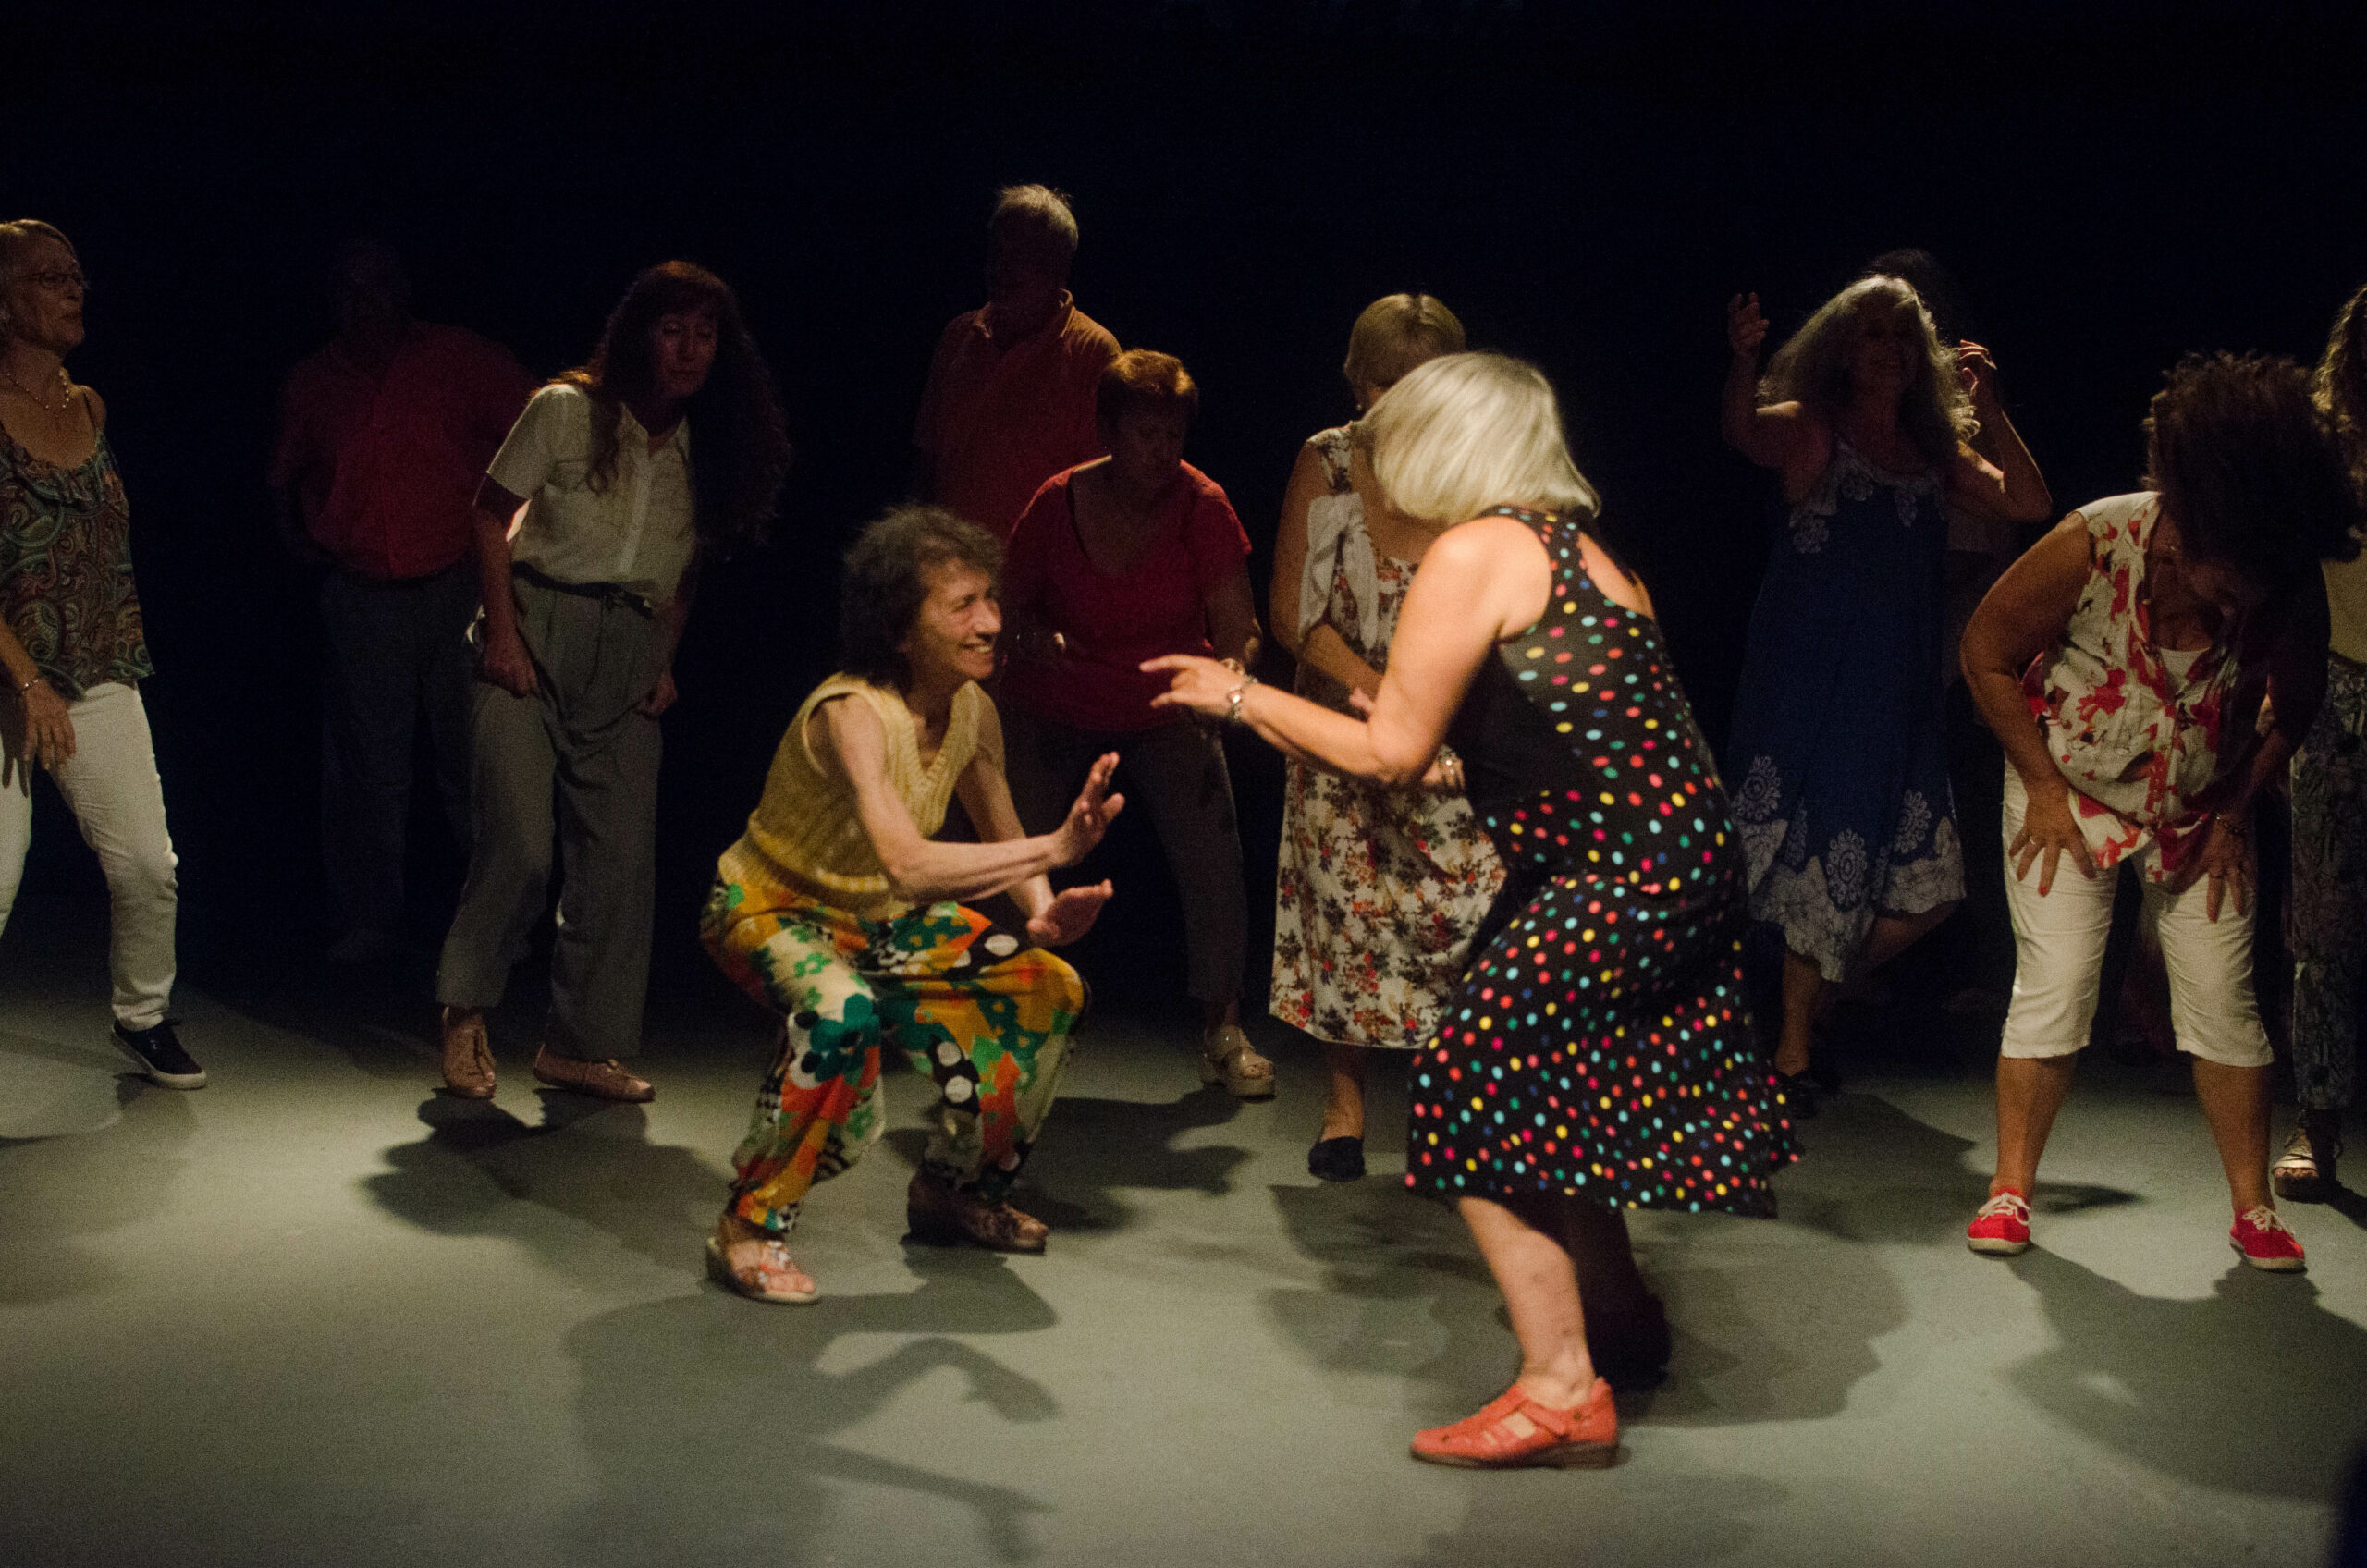 Grupo de adultos mayores en un escenario donde se ven dos mujeres protagonizando la escena con una danza entre ellas mientras el resto las rodea.